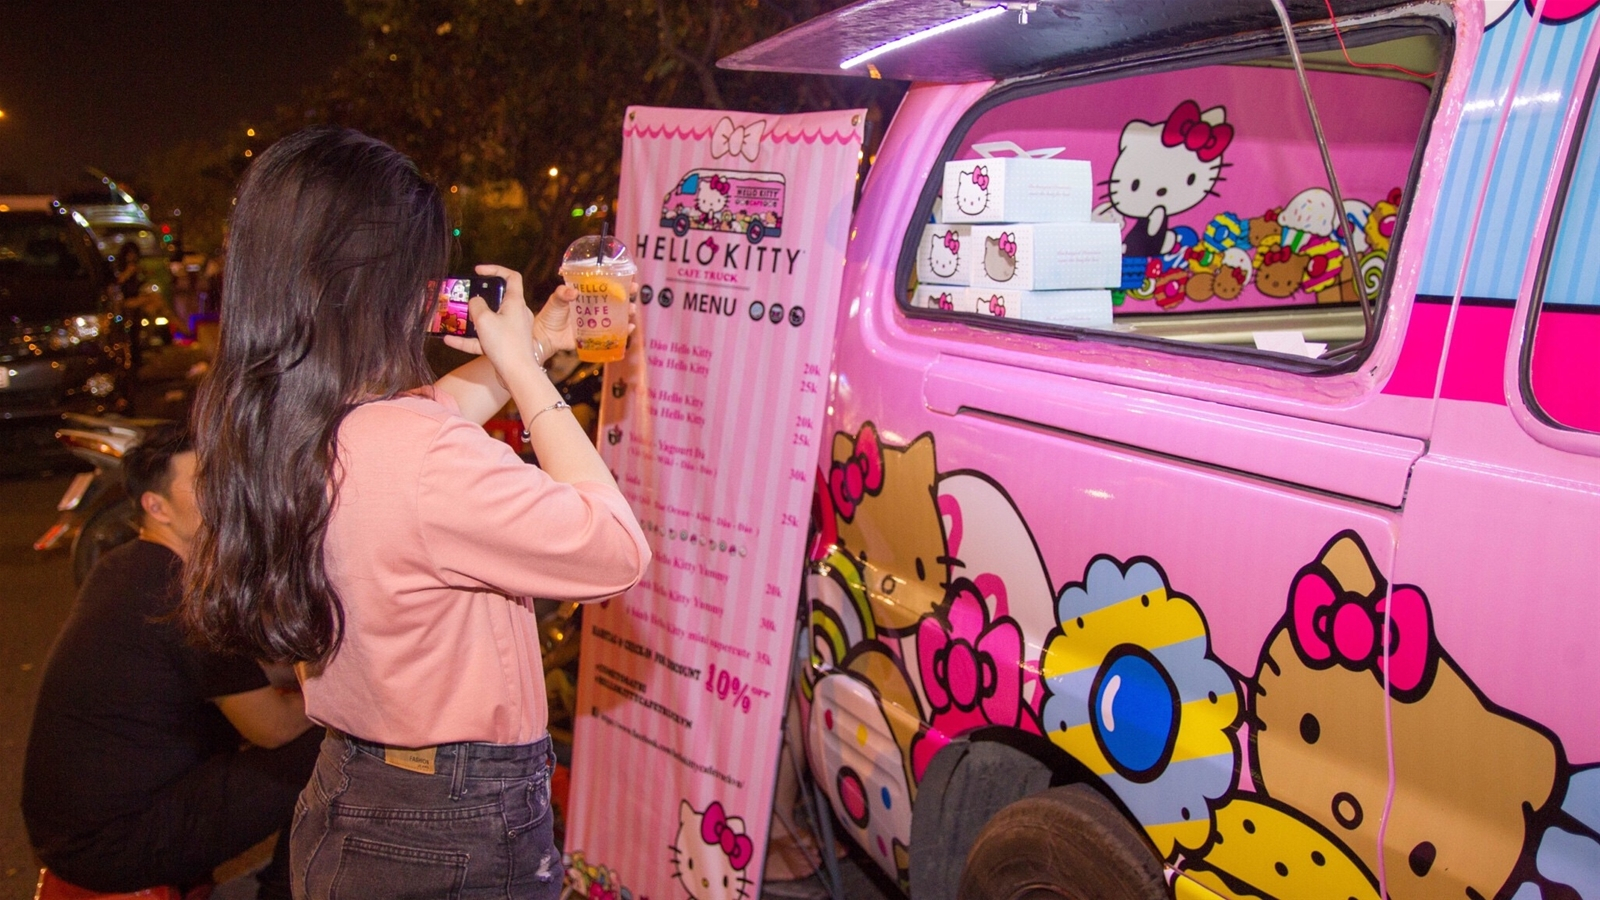 Bạn đam mê với những đồ vật liên quan đến thương hiệu Hello Kitty? Xe lưu động Hello Kitty sẽ trở nên đặc biệt và thú vị hơn bao giờ hết với những bức ảnh độc đáo của chúng tôi. Nhanh chân truy cập ngay trang web để xem và lưu giữ những kỷ niệm đáng nhớ của bạn về chiếc xe này nhé!